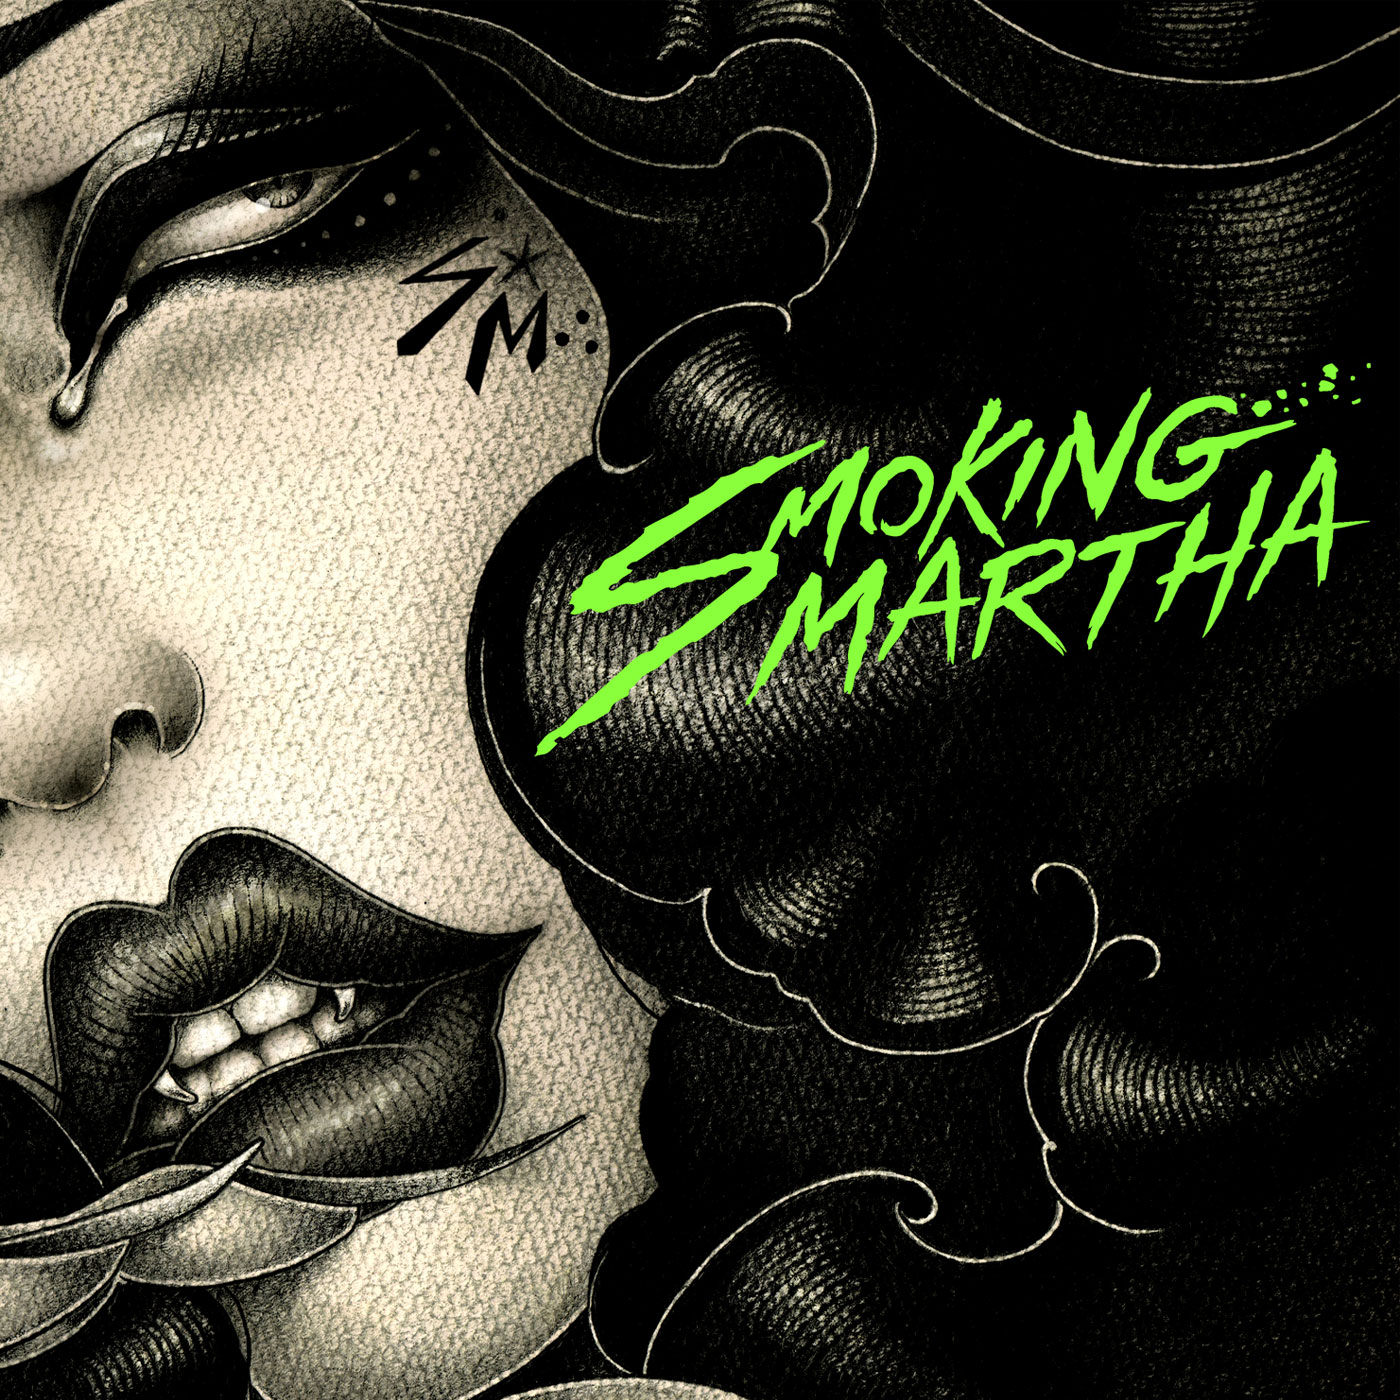  Smoking Martha – Smoking Martha